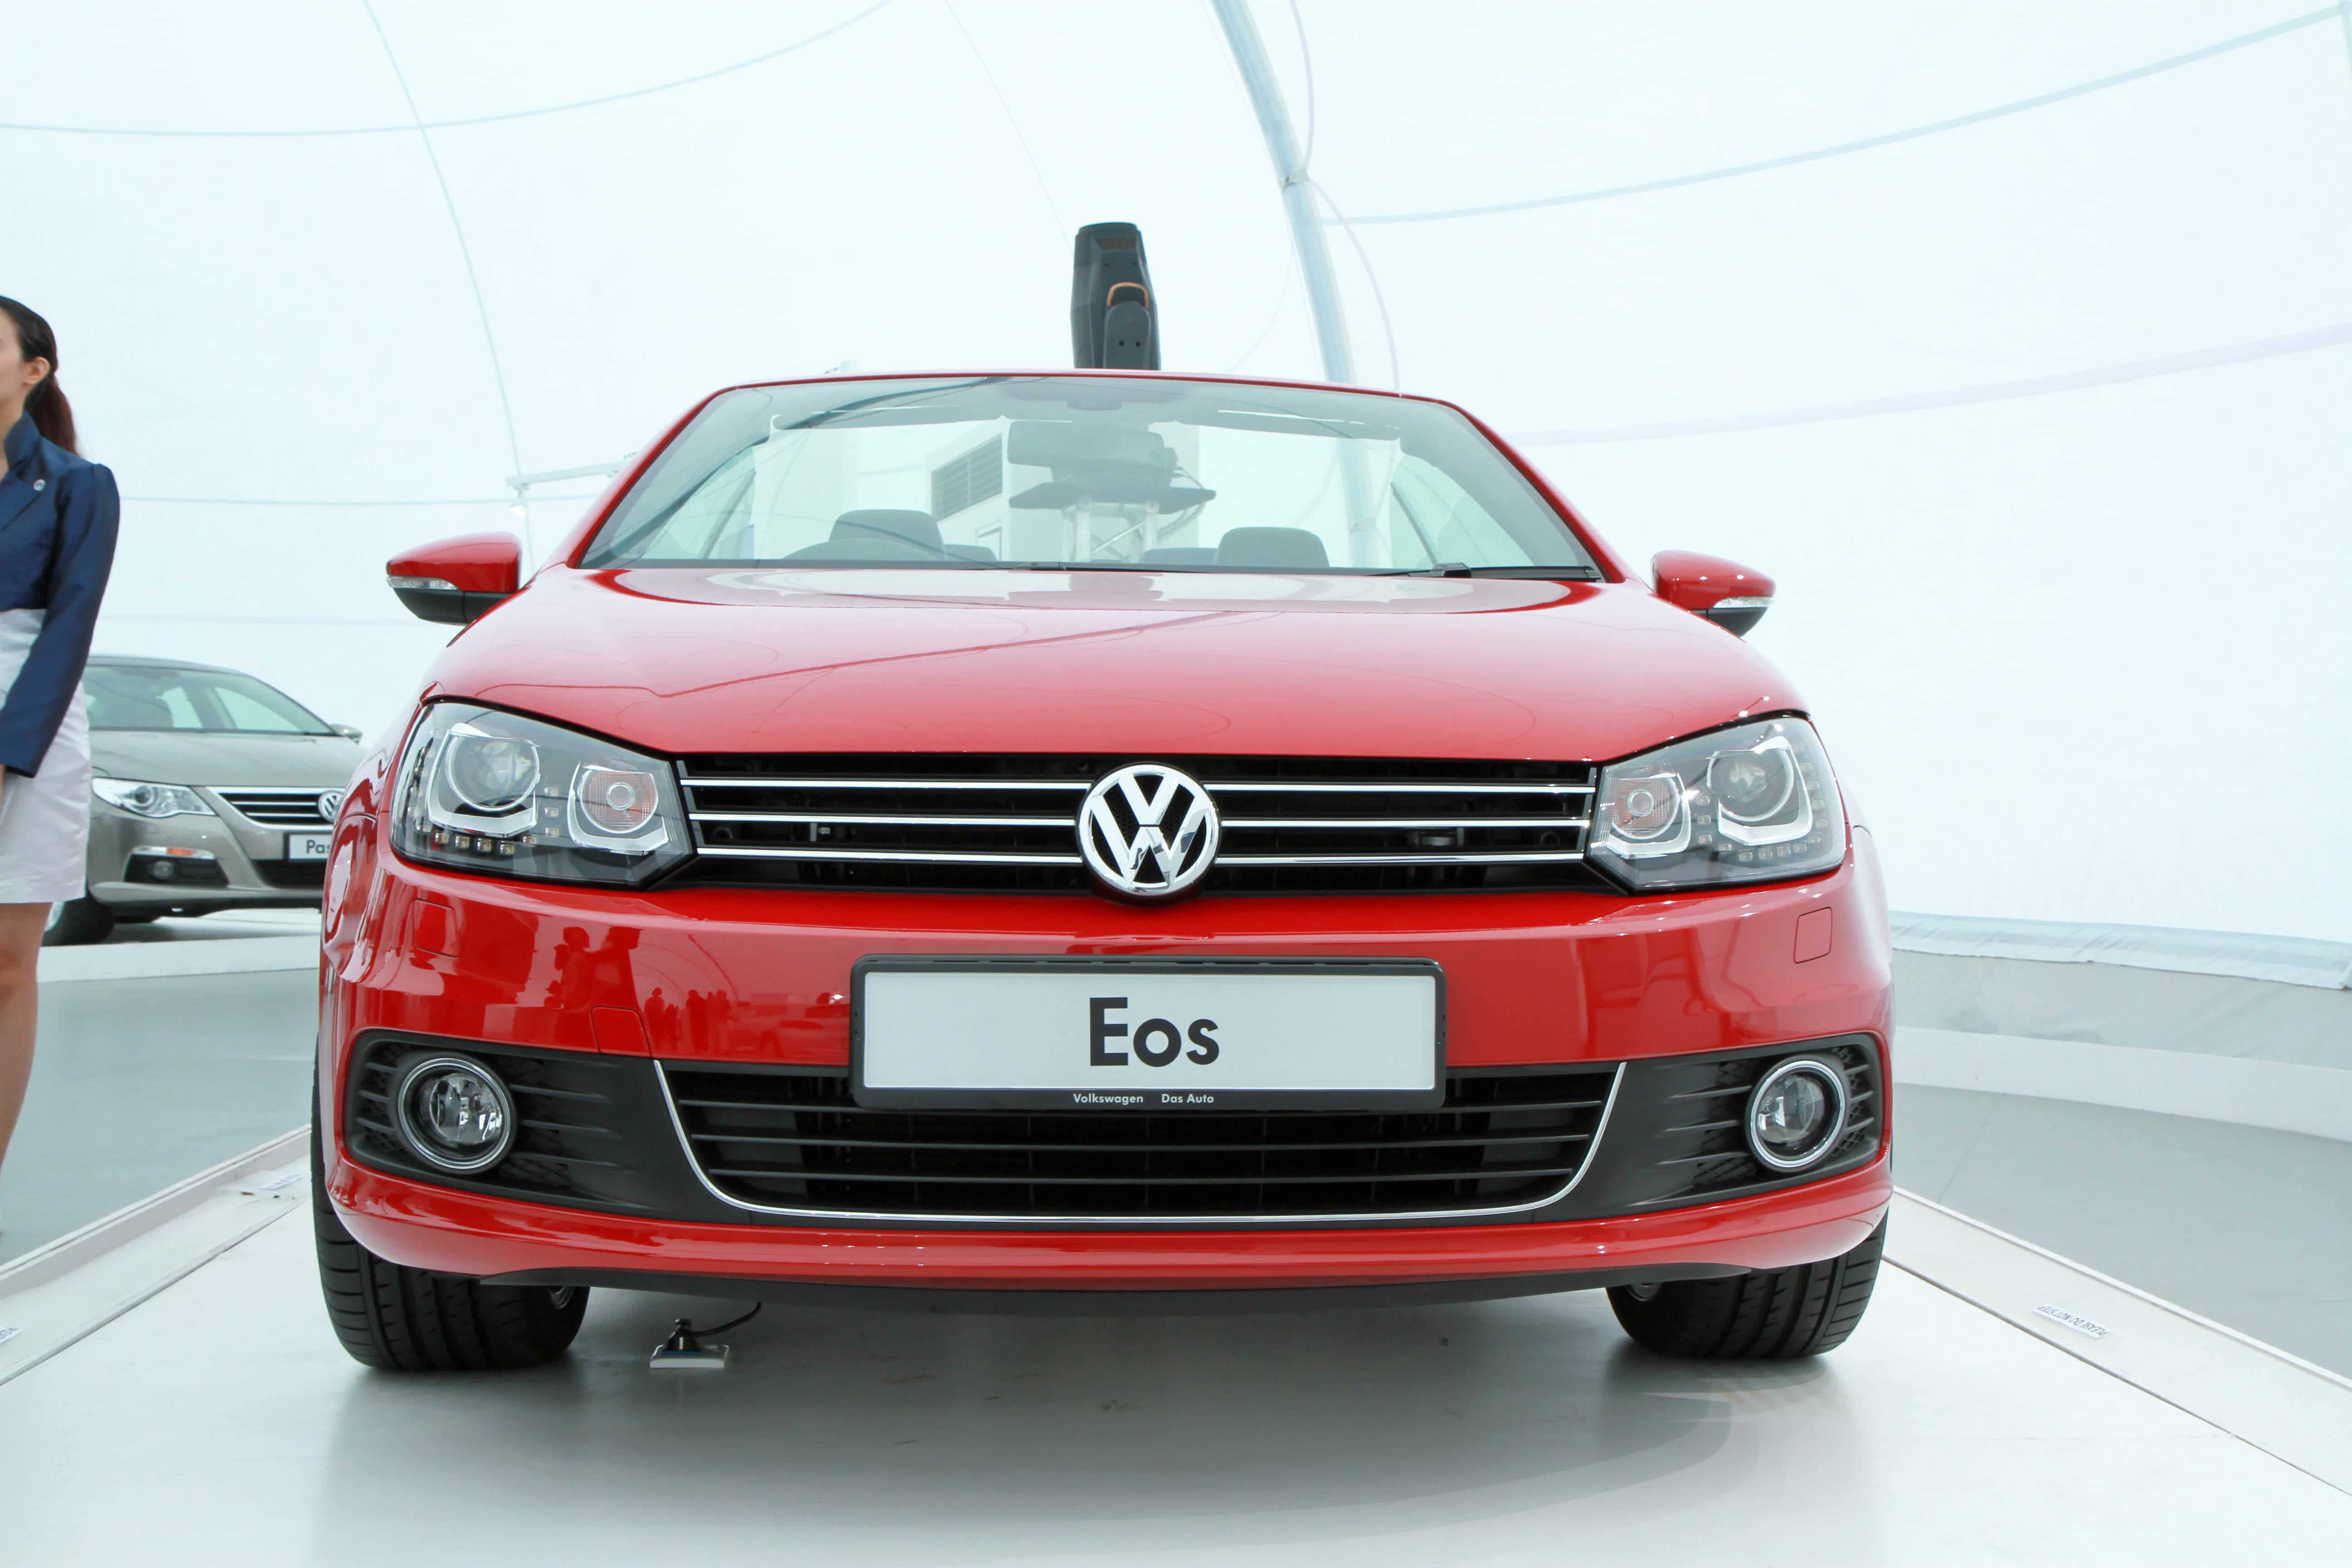 VW Eos 1.6 FSI